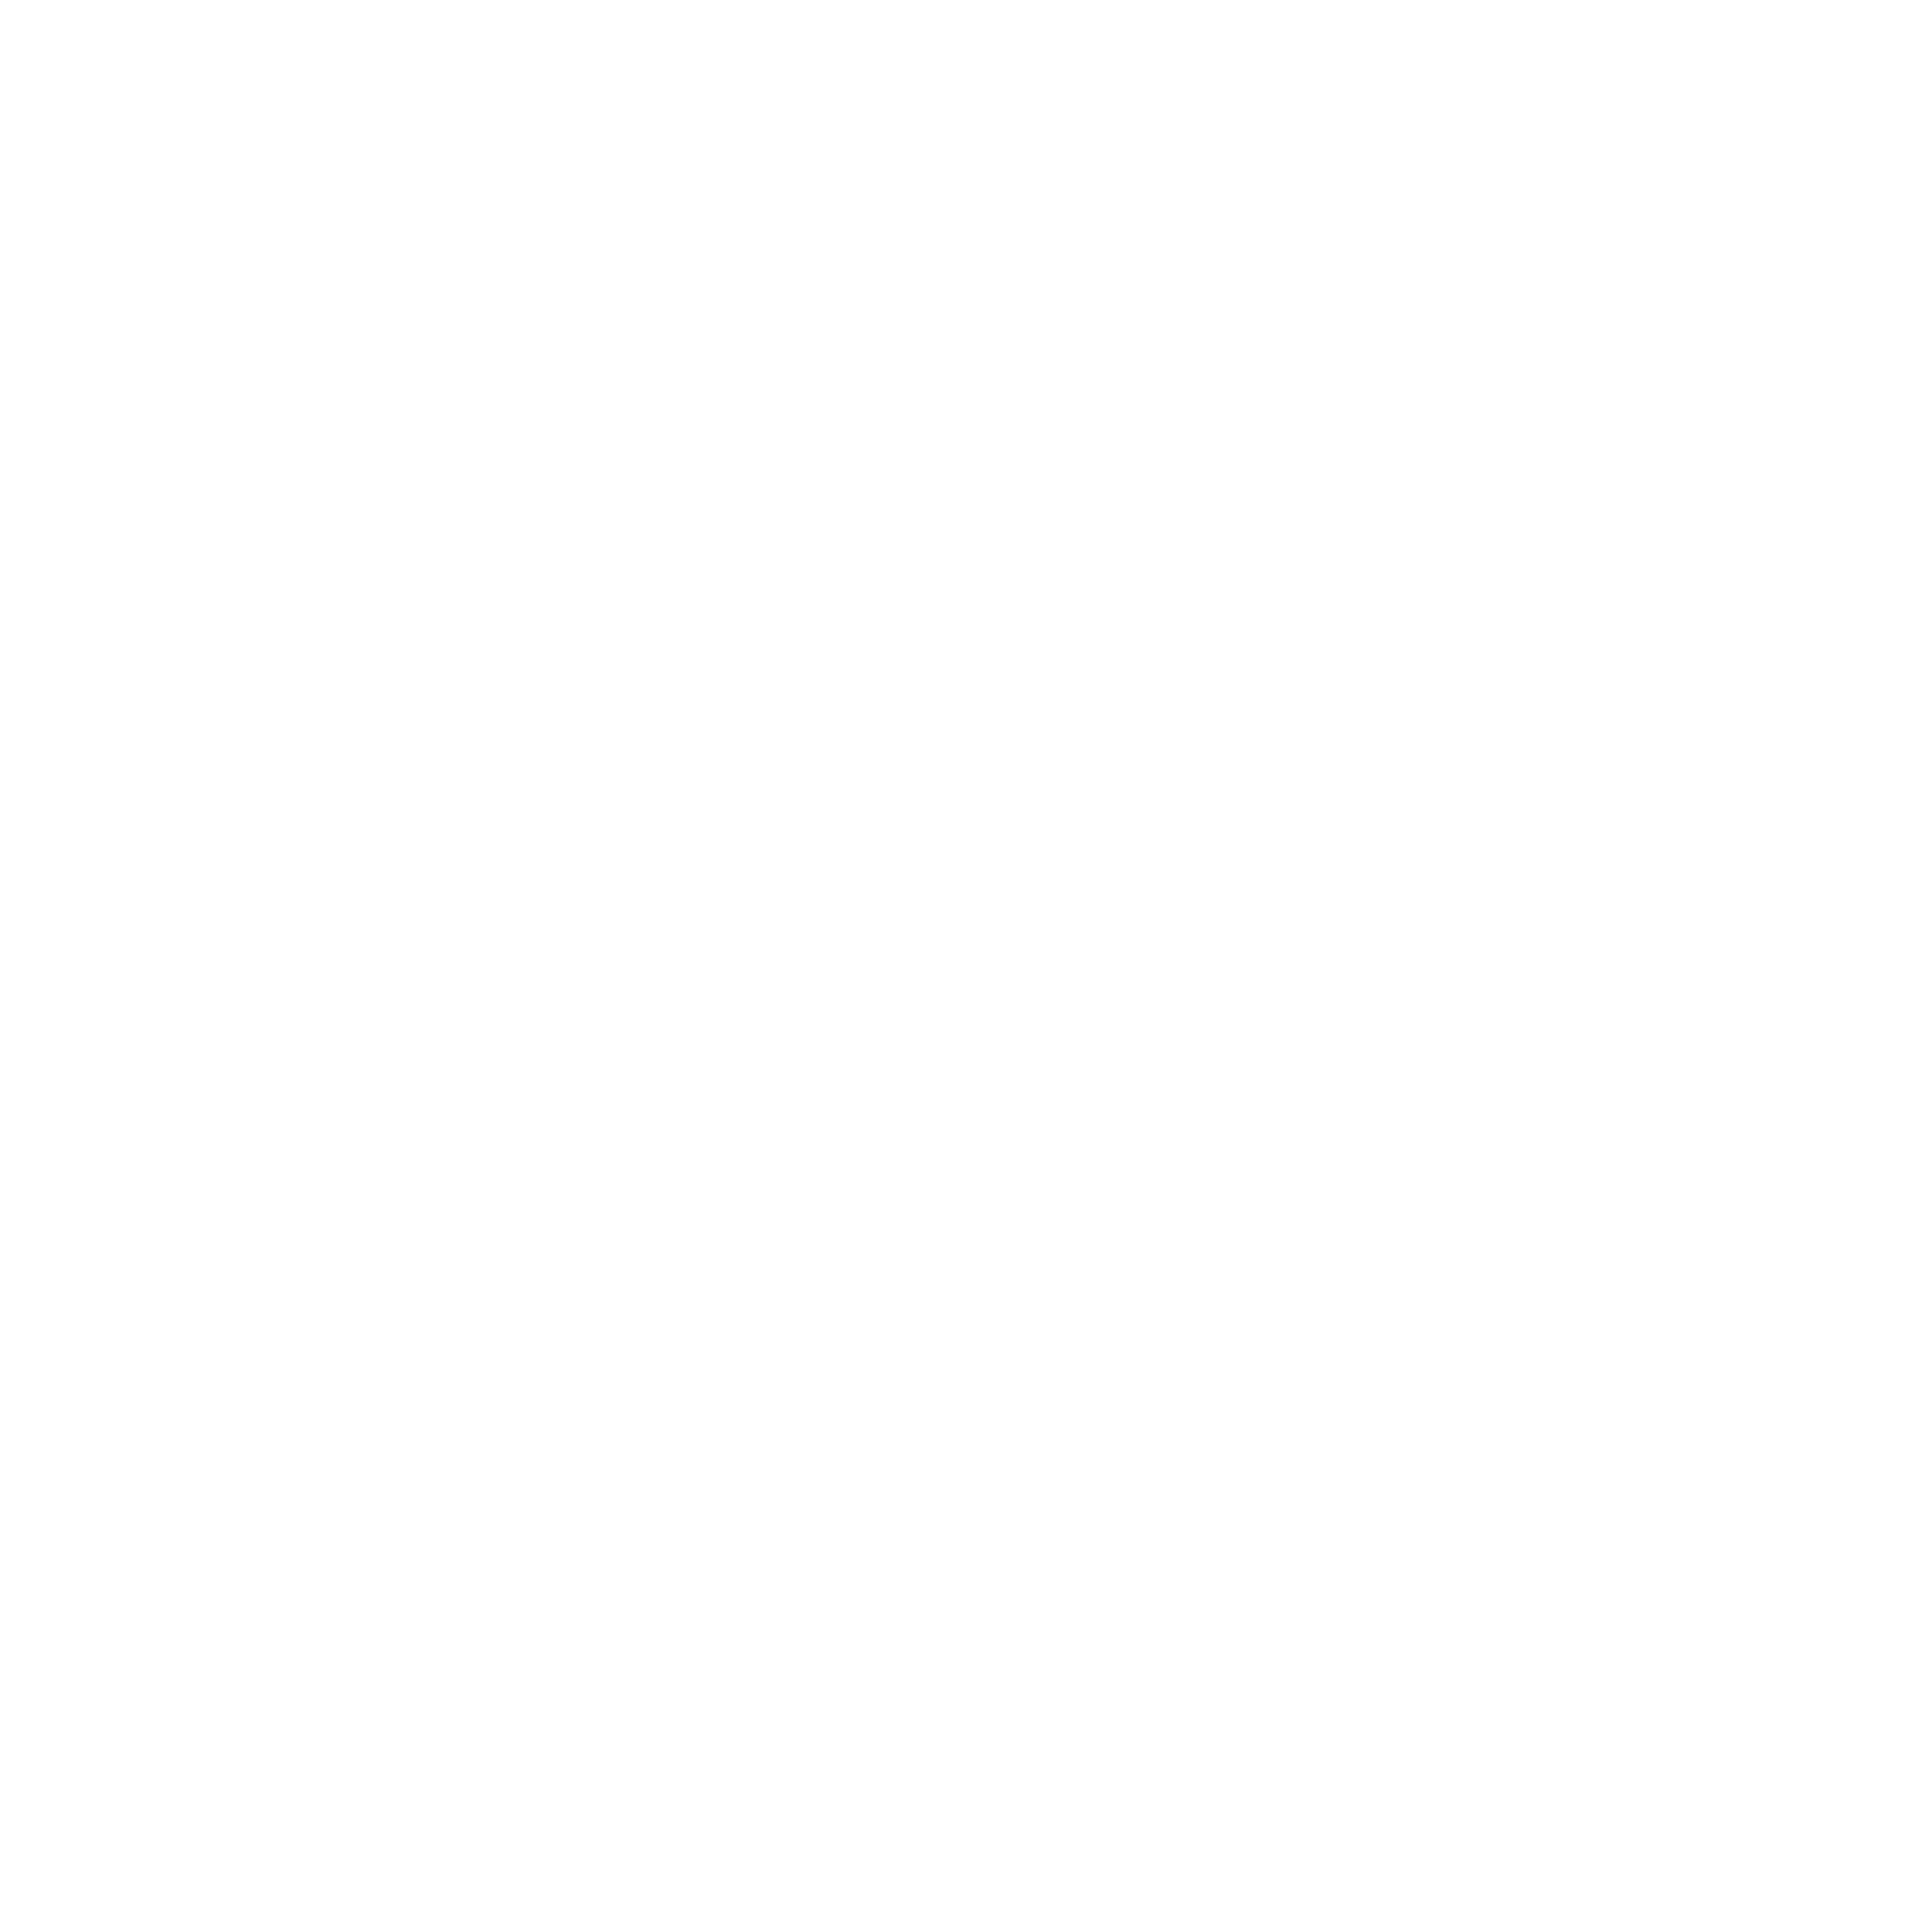 6 Columbus